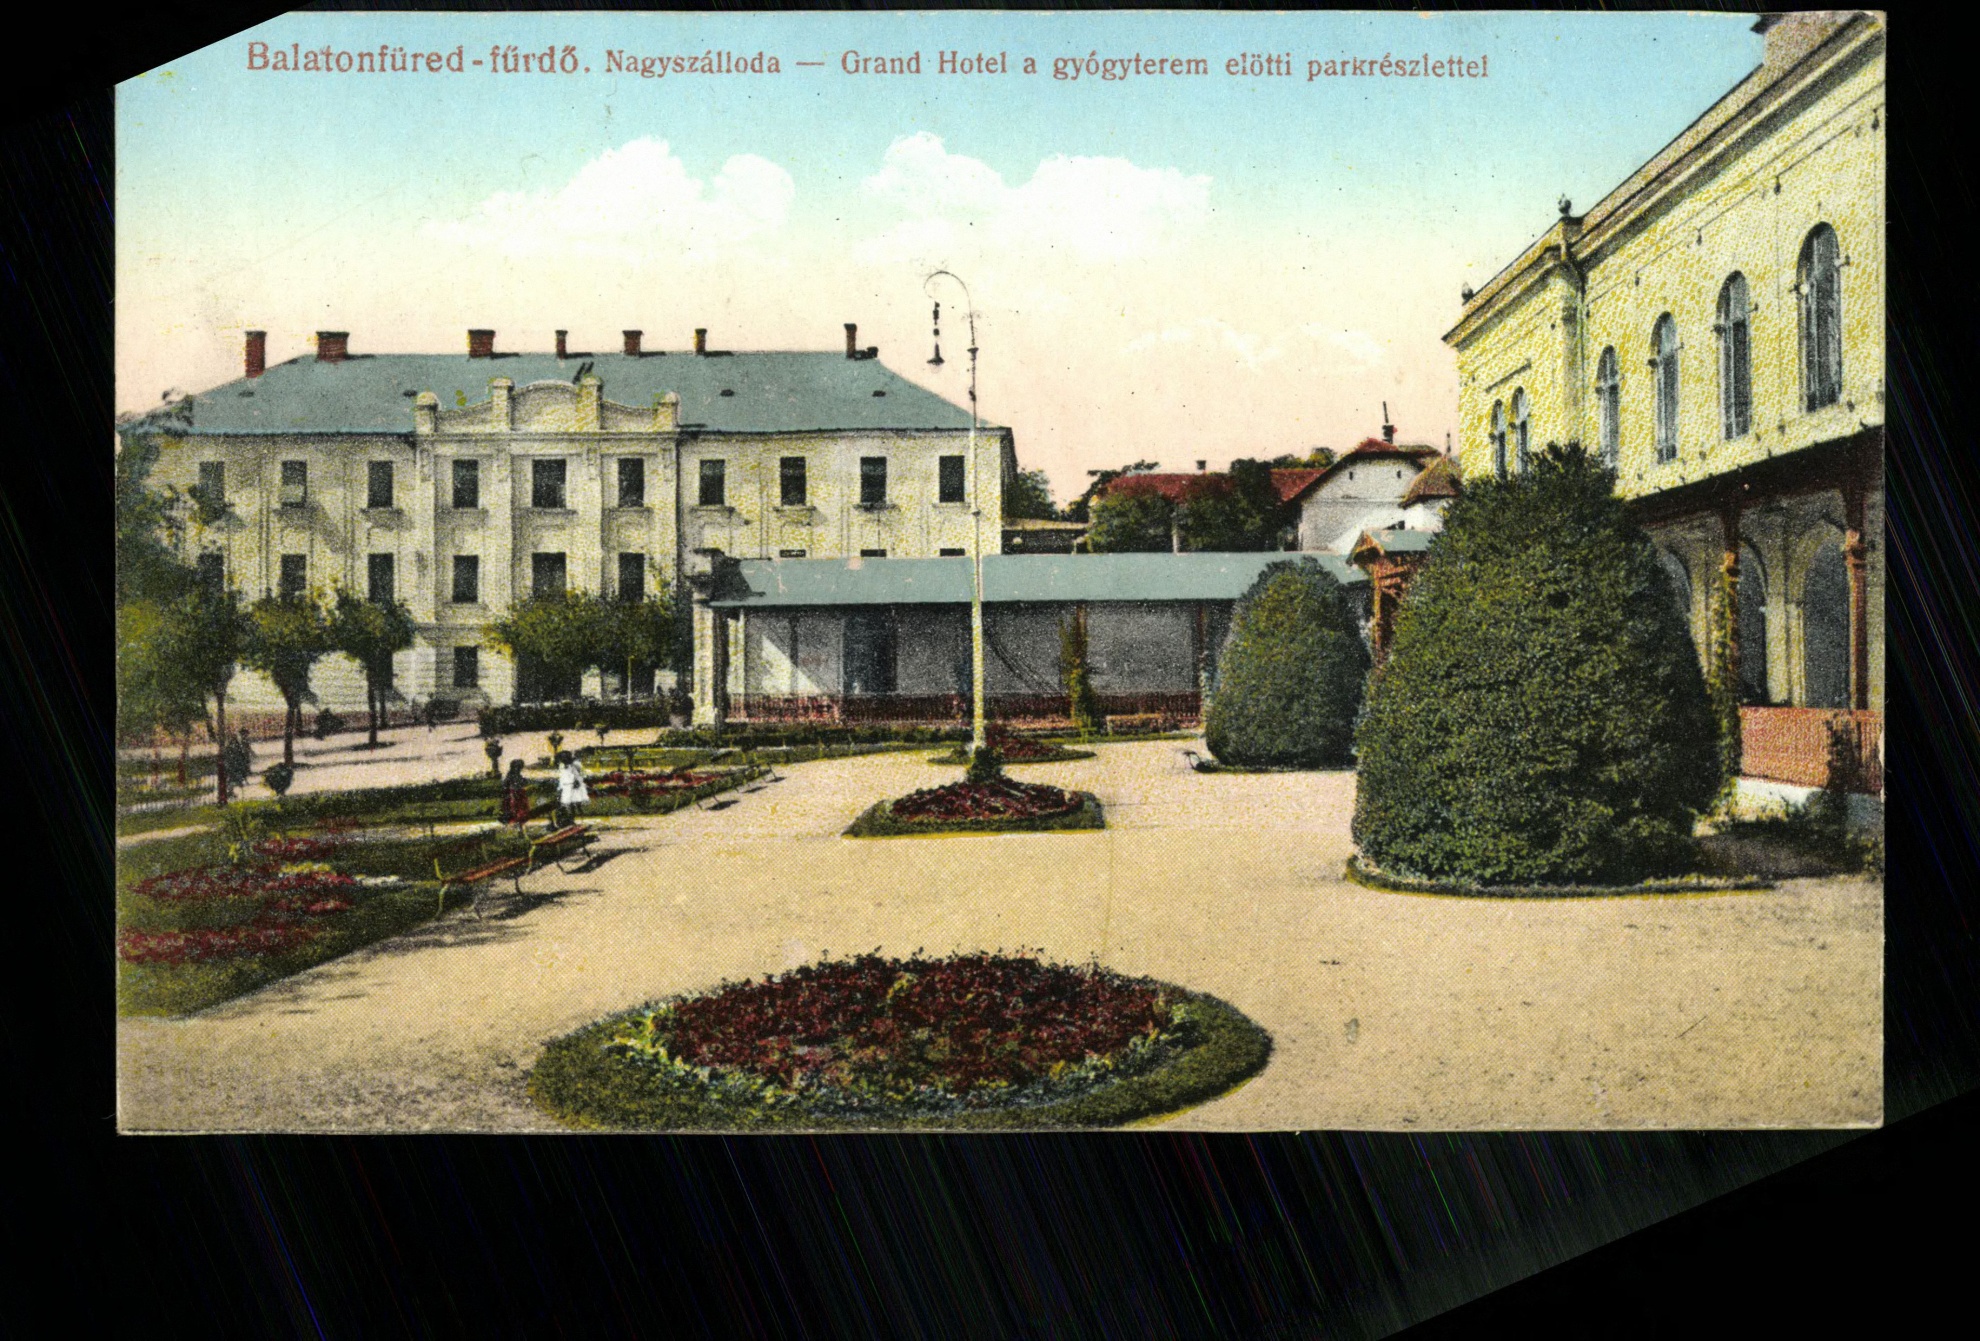 Balatonfüred-fürdő Nagyszálloda. Grand Hotel a gyógyterem előtti parkrészlettel (Magyar Kereskedelmi és Vendéglátóipari Múzeum CC BY-NC-ND)